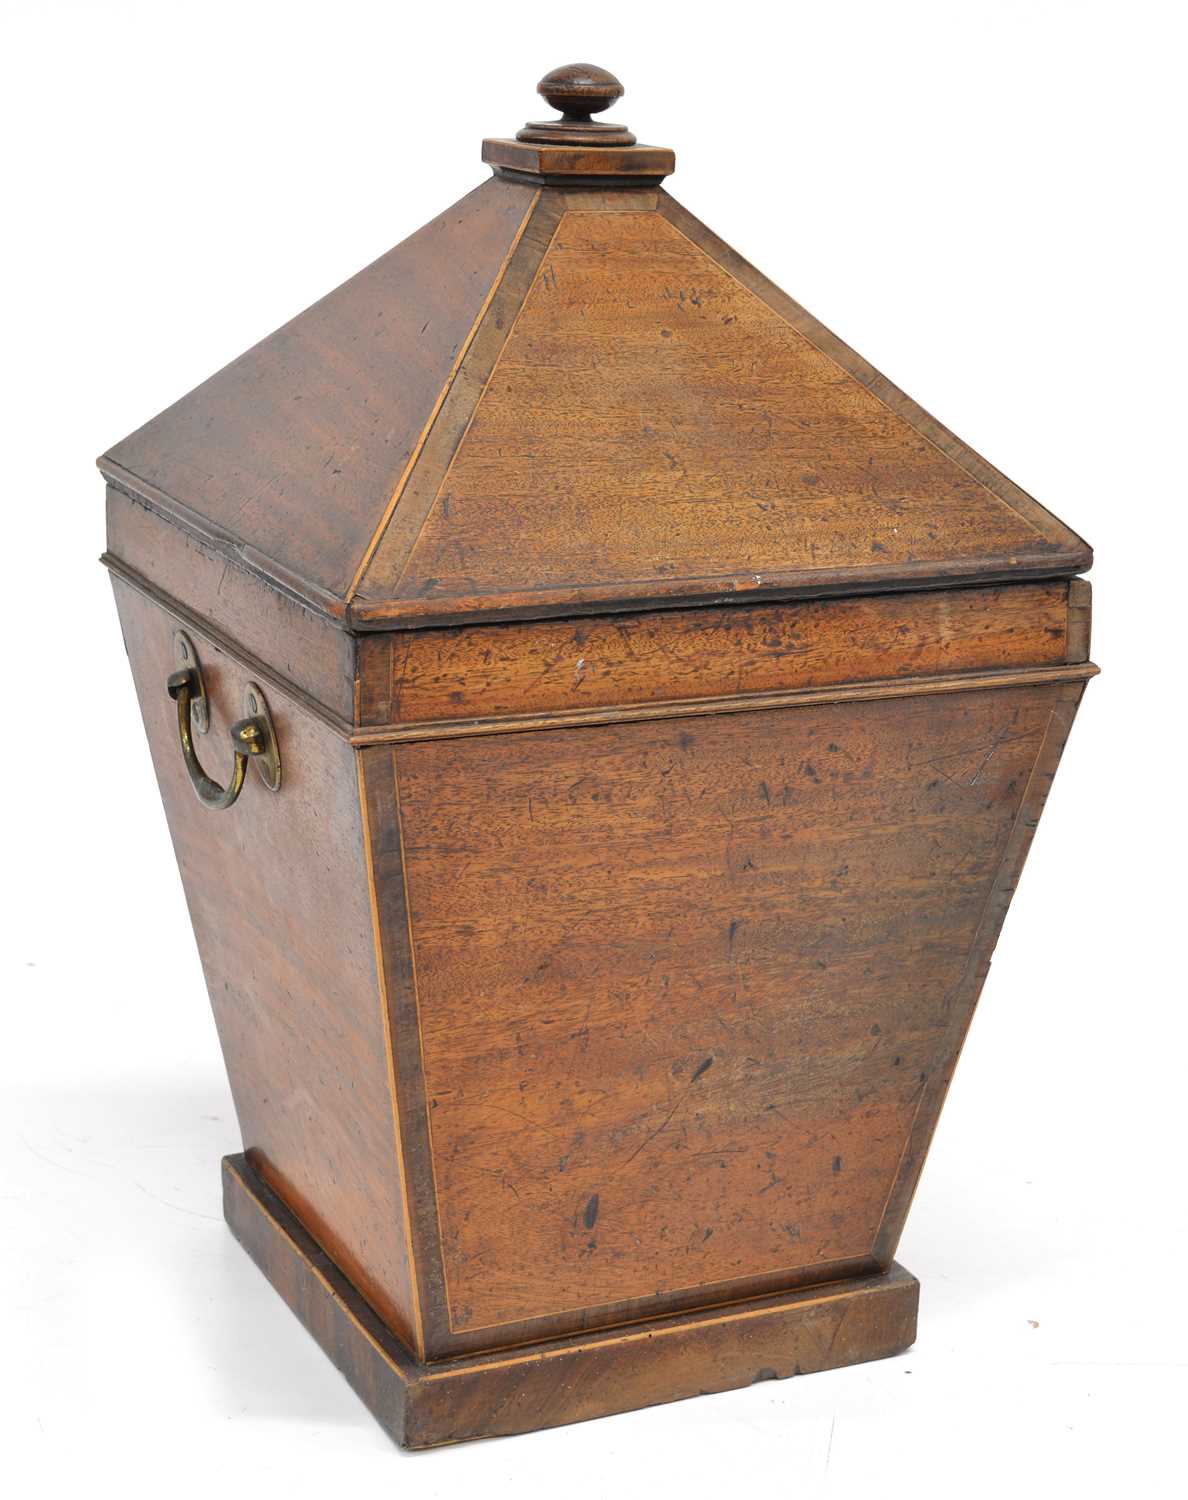 Lot 249 - Mid 19th century sarcophagus-shaped mahogany coal bin